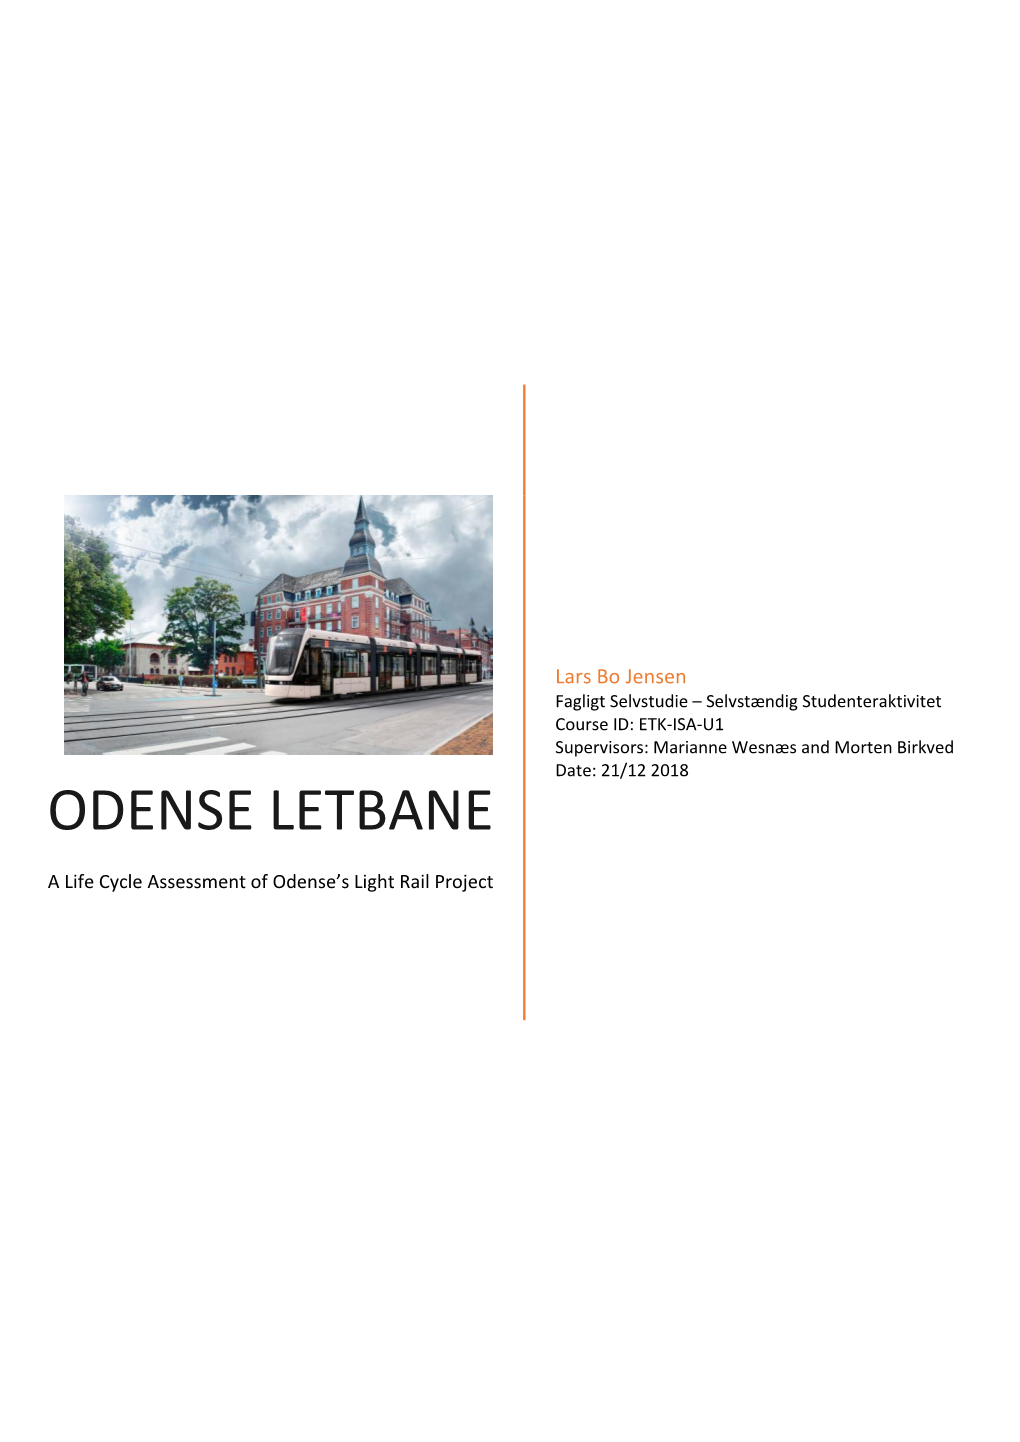 Odense Letbane